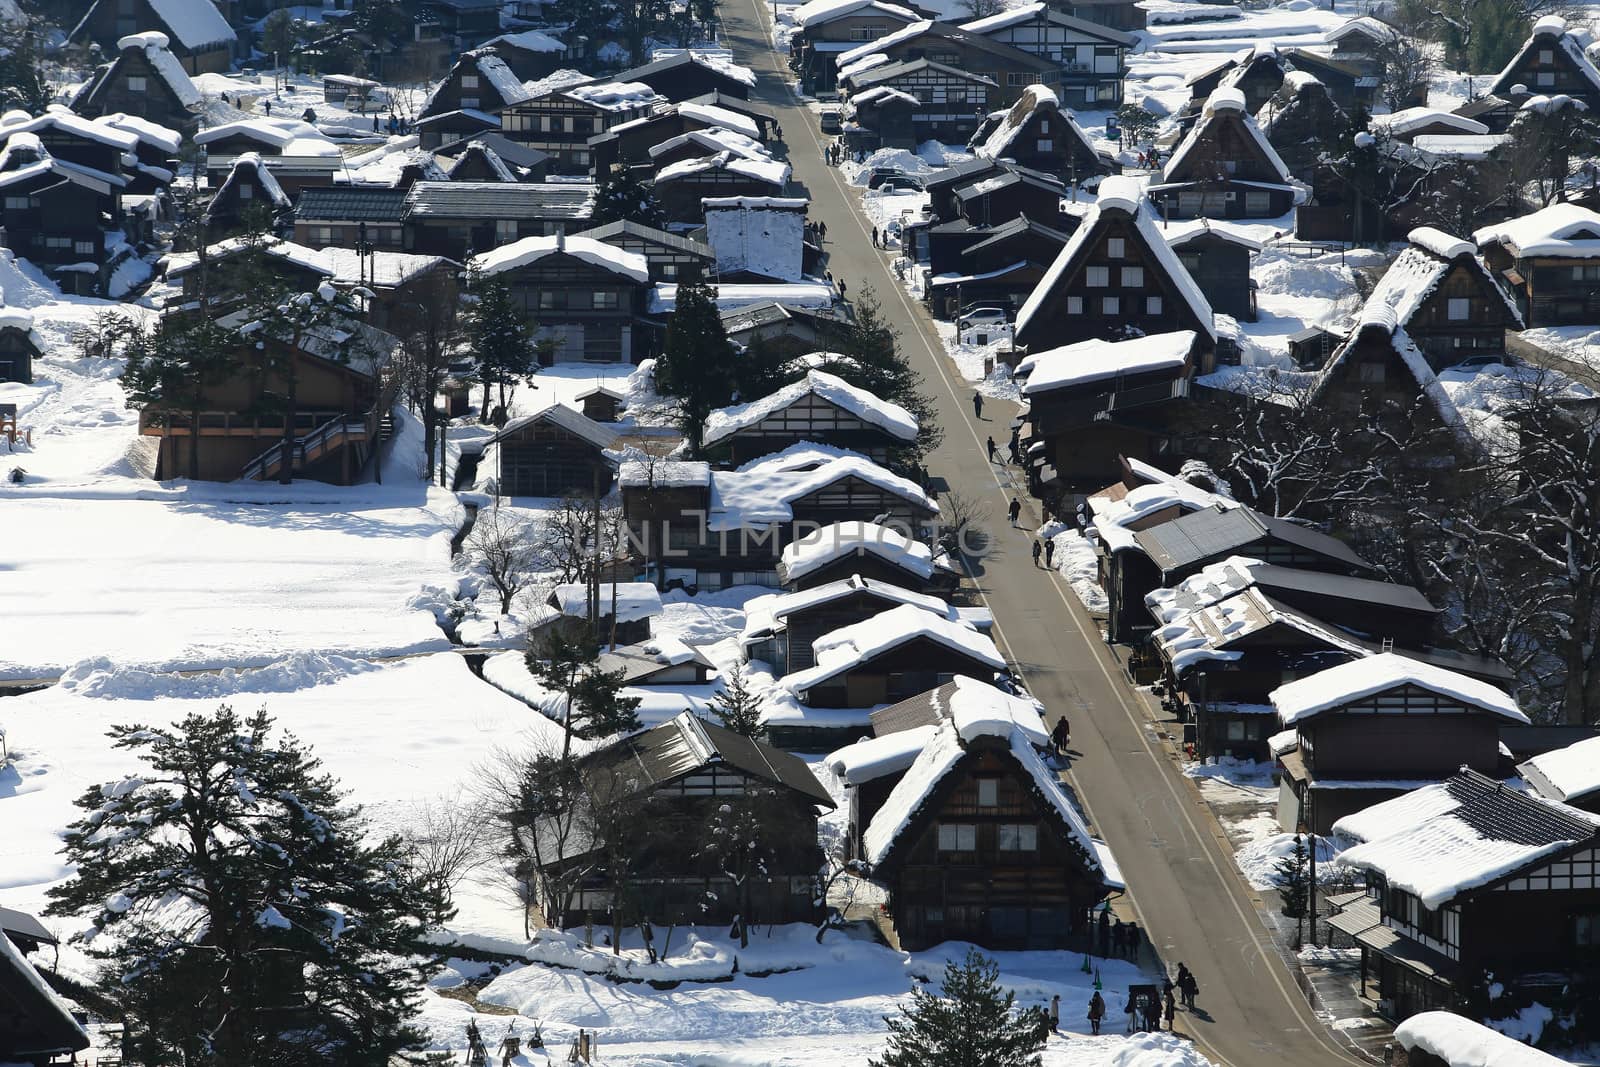 Viewpoint at Gassho-zukuri Village, Shirakawago, Japan by rufous